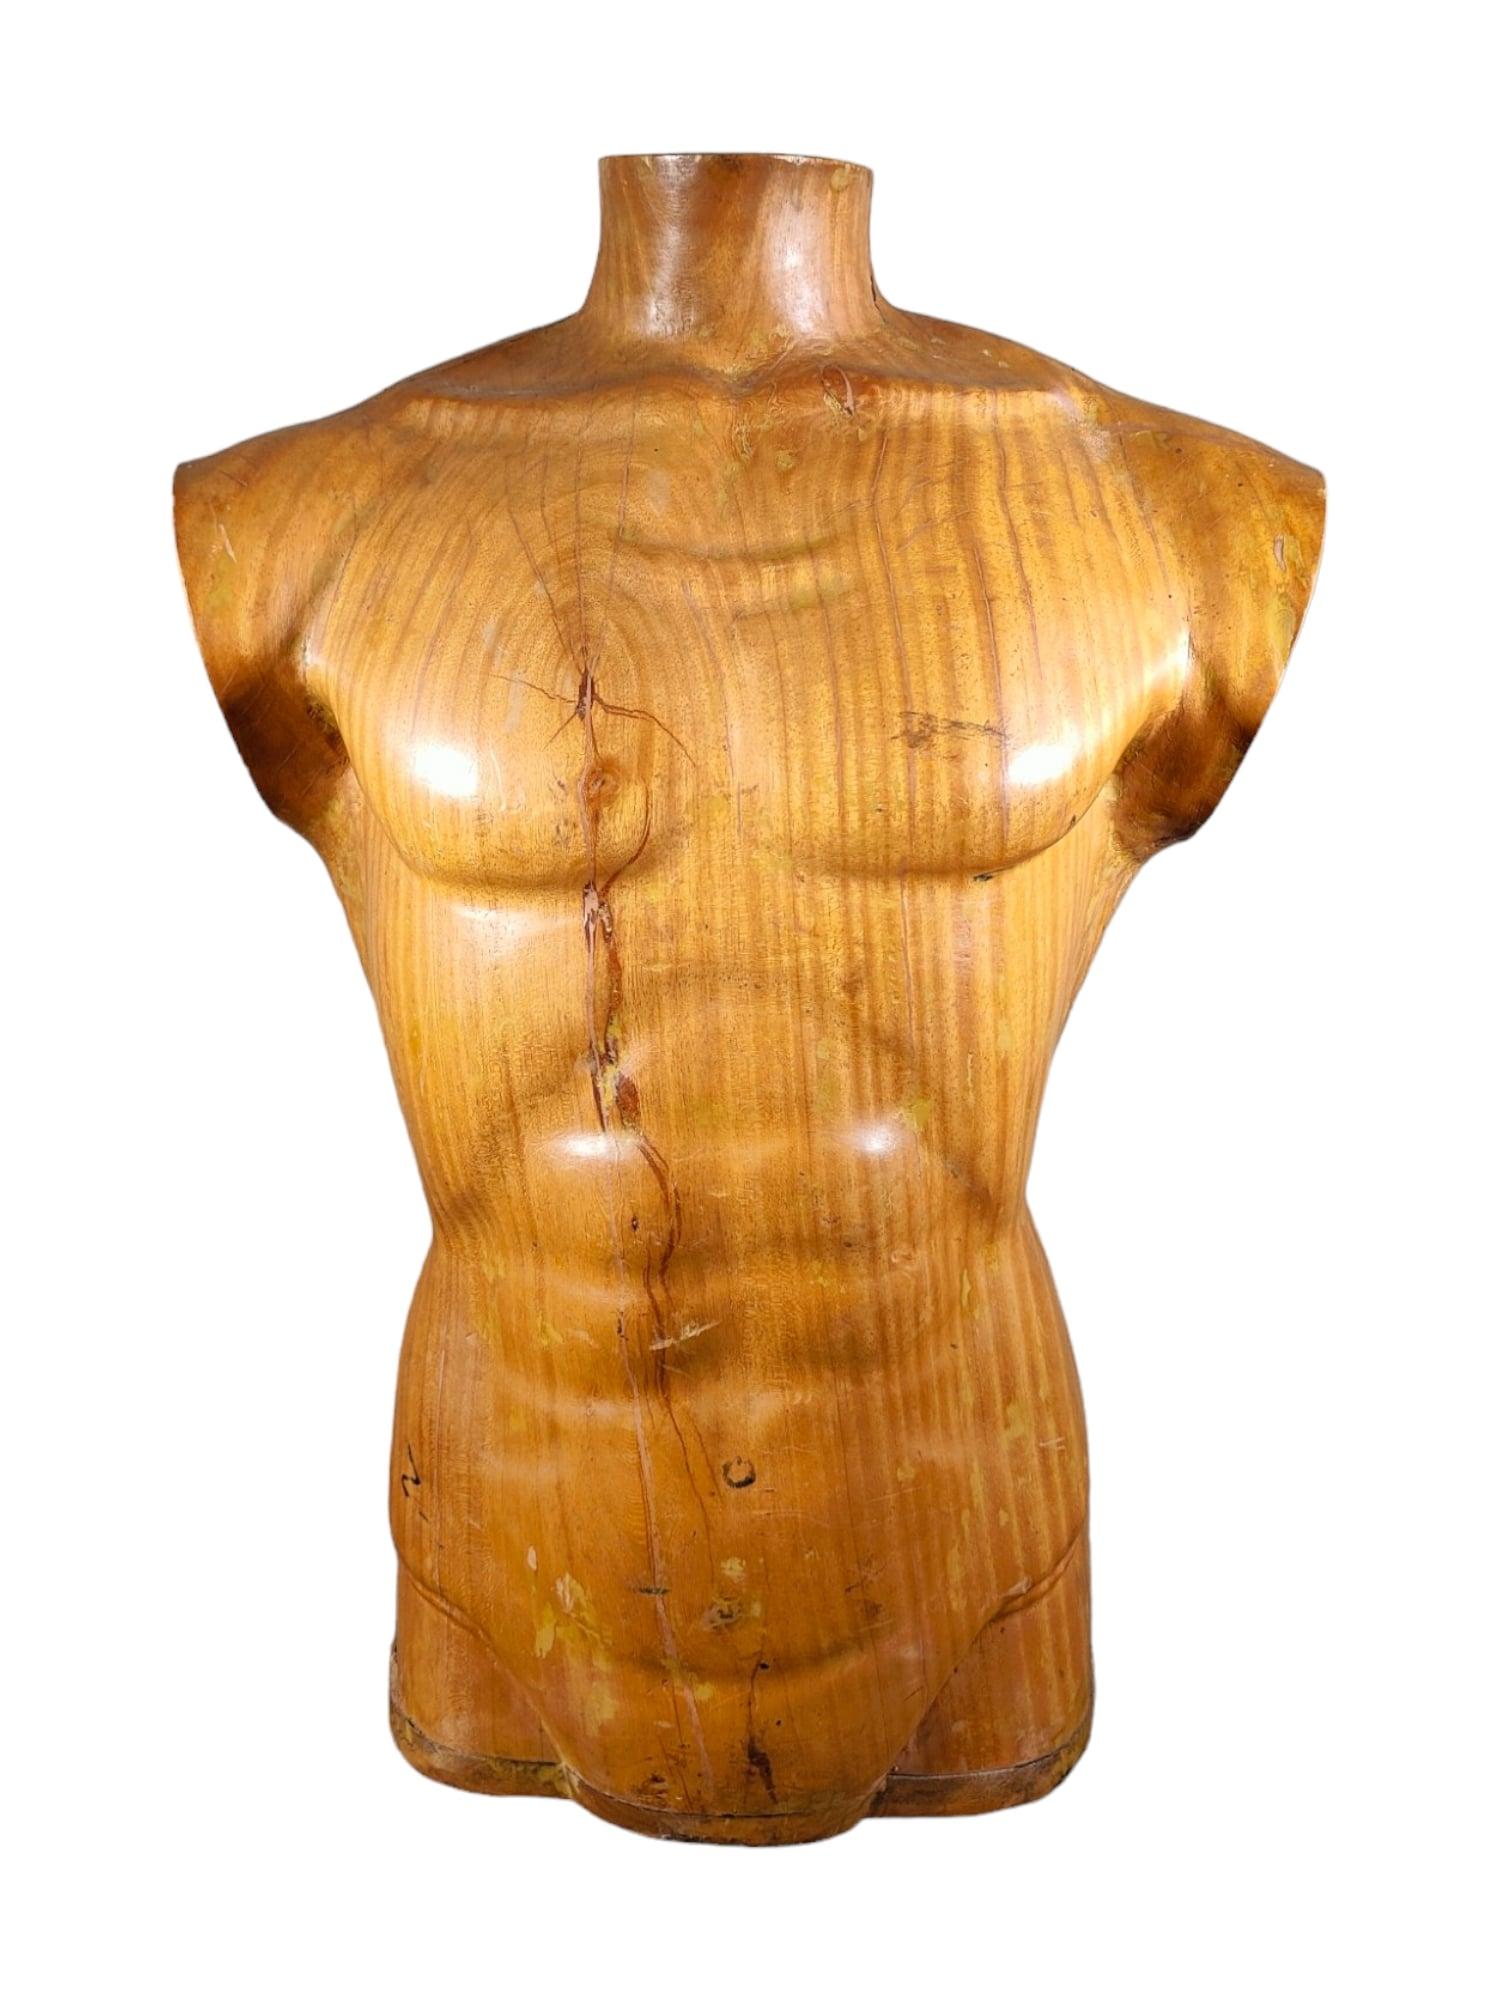 Mit diesem eleganten männlichen Torso aus Holz tauchen Sie in die Raffinesse der französischen Kunst der 1950er Jahre ein. Dieses aus massivem Holz geschnitzte Stück ist ein Zeugnis für die Handwerkskunst und das dekorative Flair der damaligen